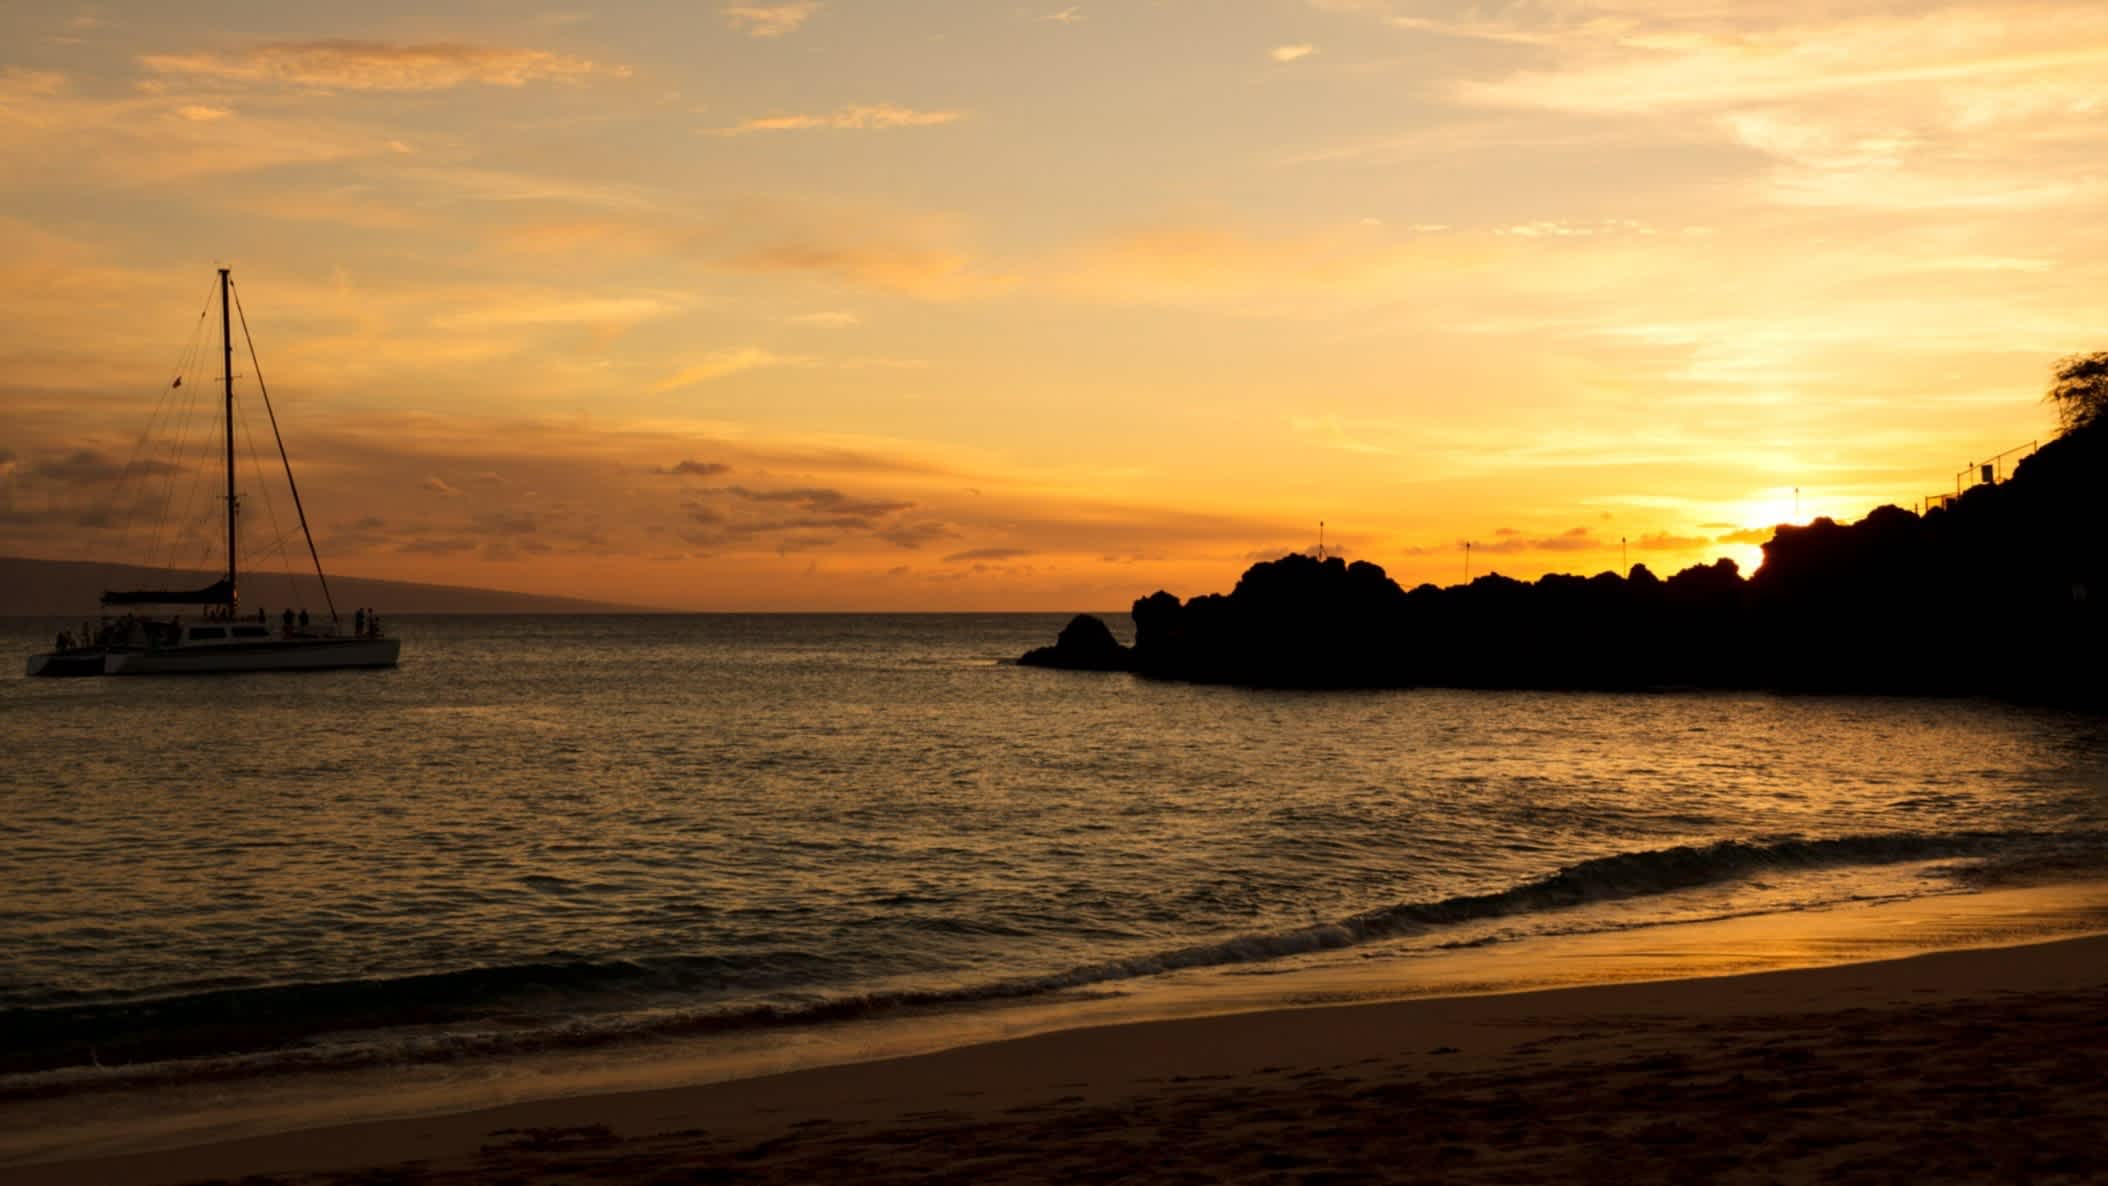 Der Strand Kaanapali-Strand, Maui, Hawaii , USA bei Sonnendämmerung und mit Blick auf das Meer sowie Felsen am Rand des Strandes und einem Seegelboot im Wasser.